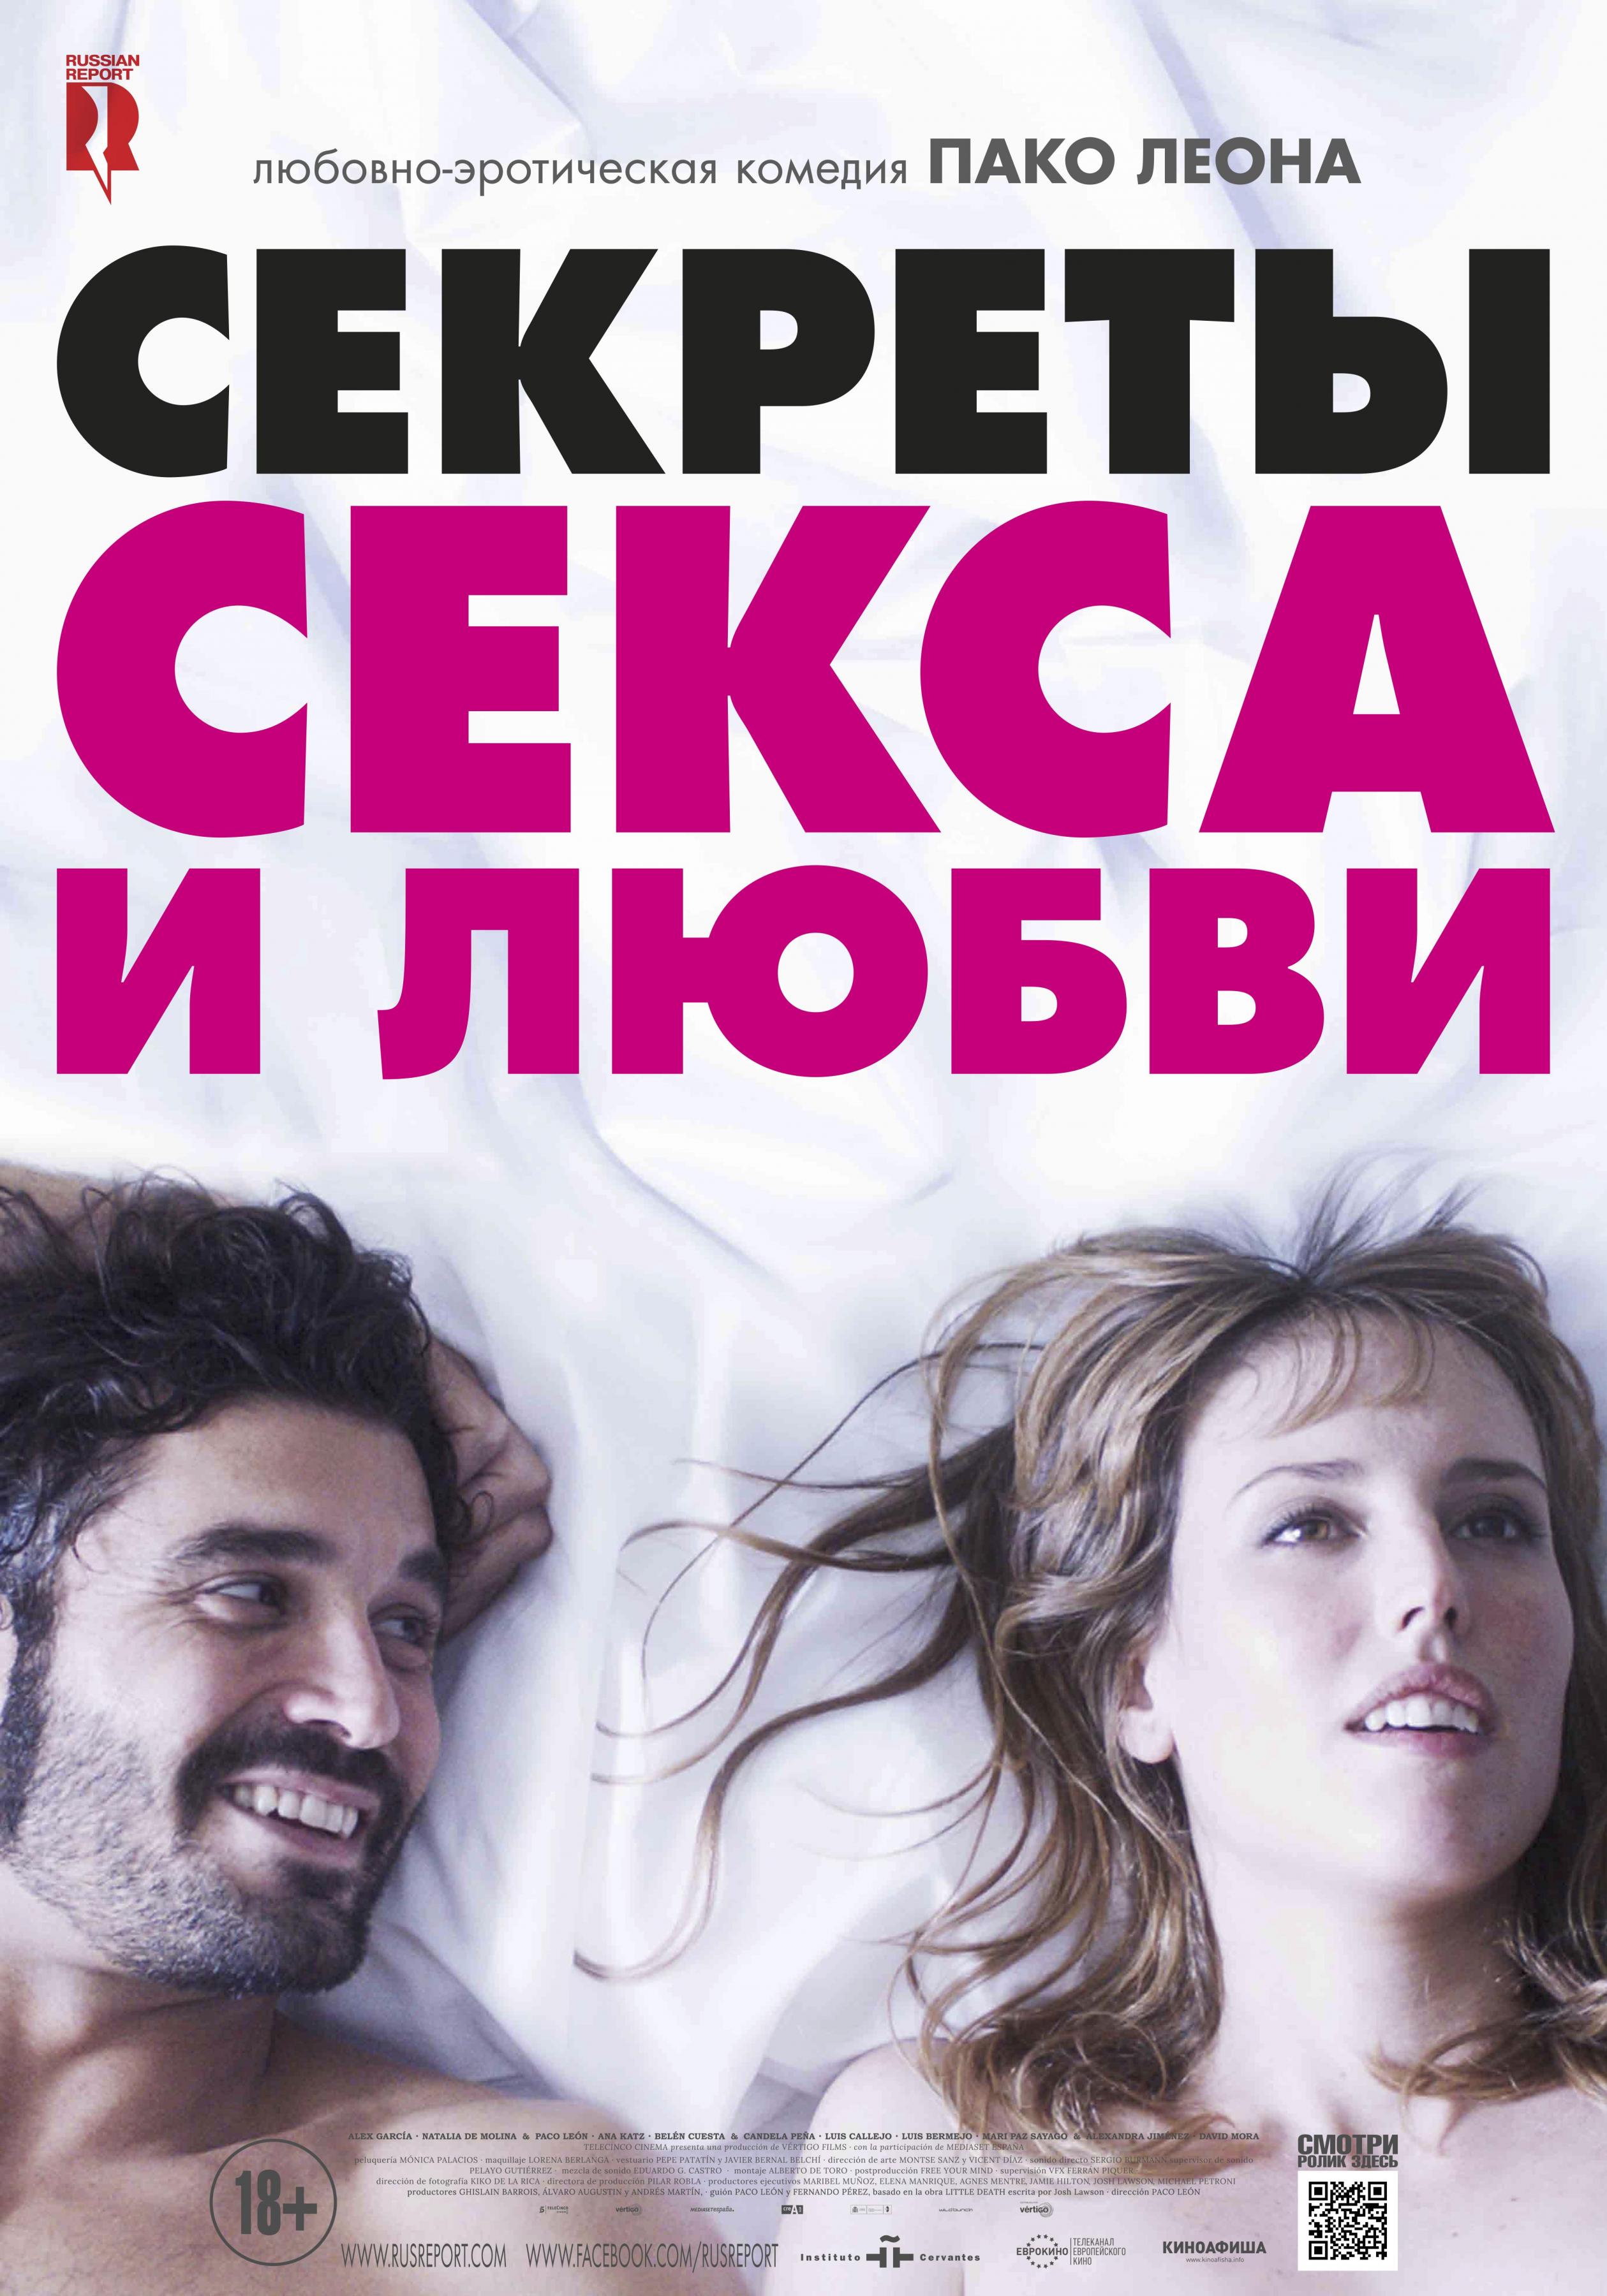 Постер фильма Секреты секса и любви | Kiki, el amor se hace